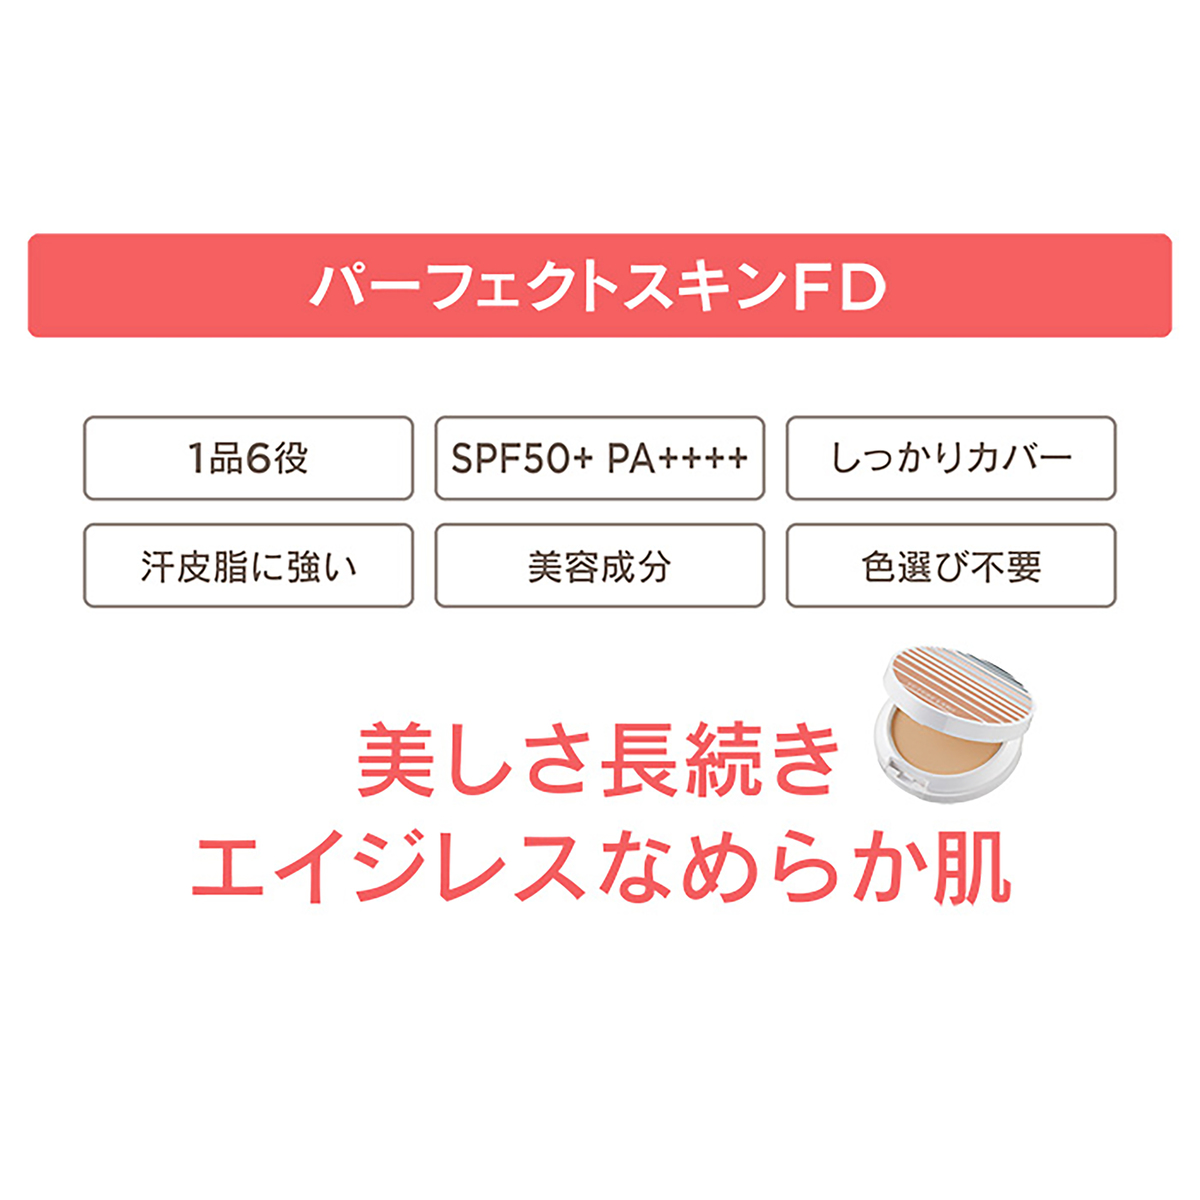 フューチャーラボパーフェクトスキンファンデーション+レフィル2個セット - QVC.jp